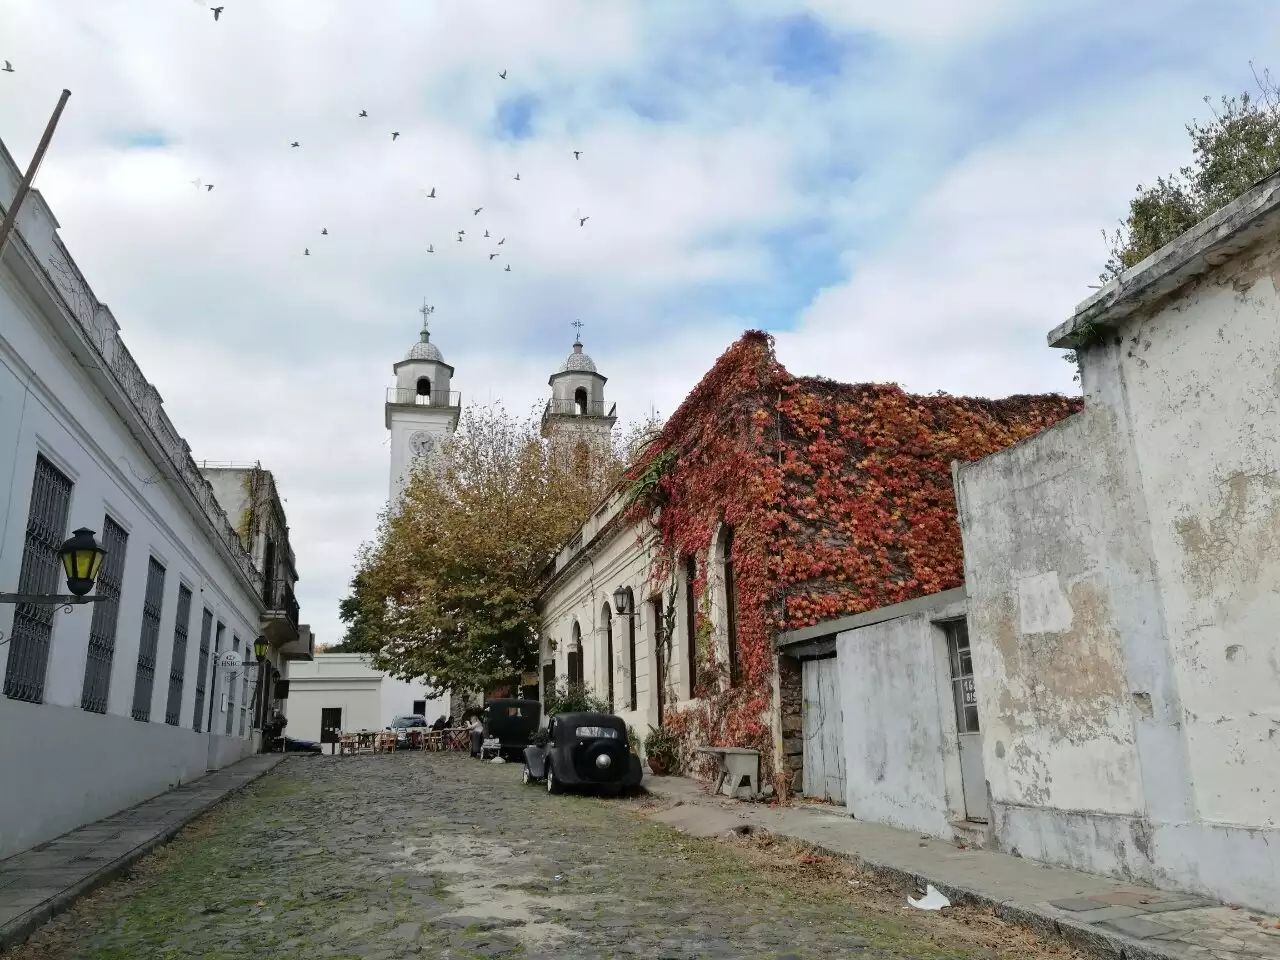 #拉普拉塔河边的安宁小城~科洛尼亚# 乌拉圭科洛尼亚城，建于1680年，位于乌拉圭河进入拉普拉塔河的